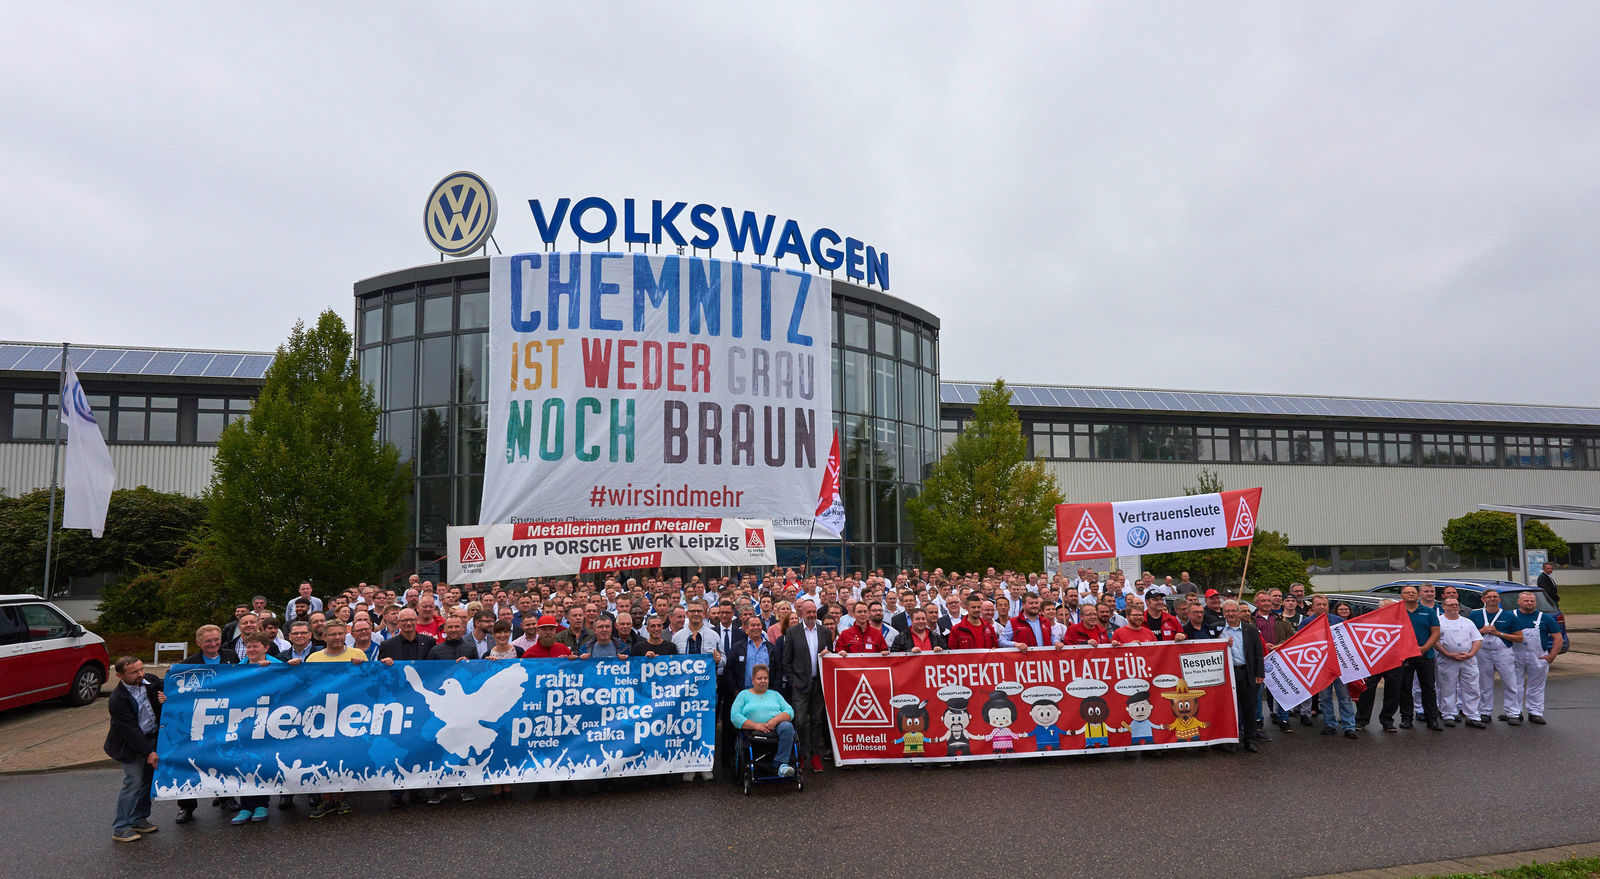 Volkswagen setzt in Chemnitz klares Zeichen gegen Fremdenfeindlichkeit, Diskriminierung und Ausgrenzung